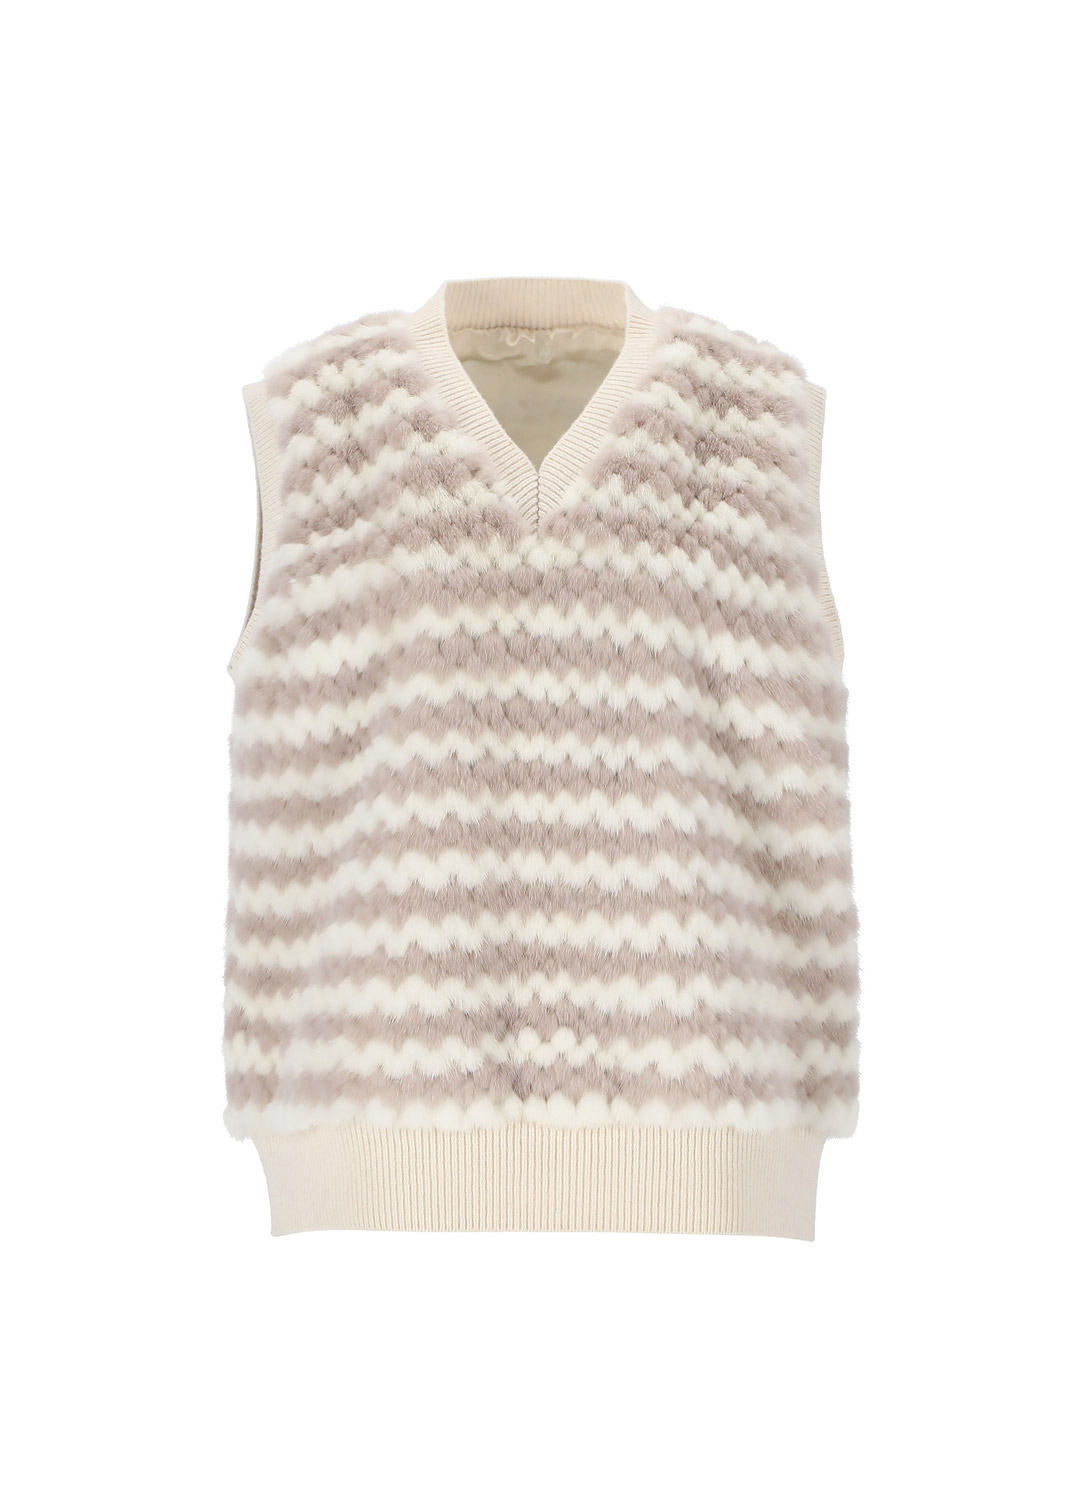 Mink knit vest [Ivory]